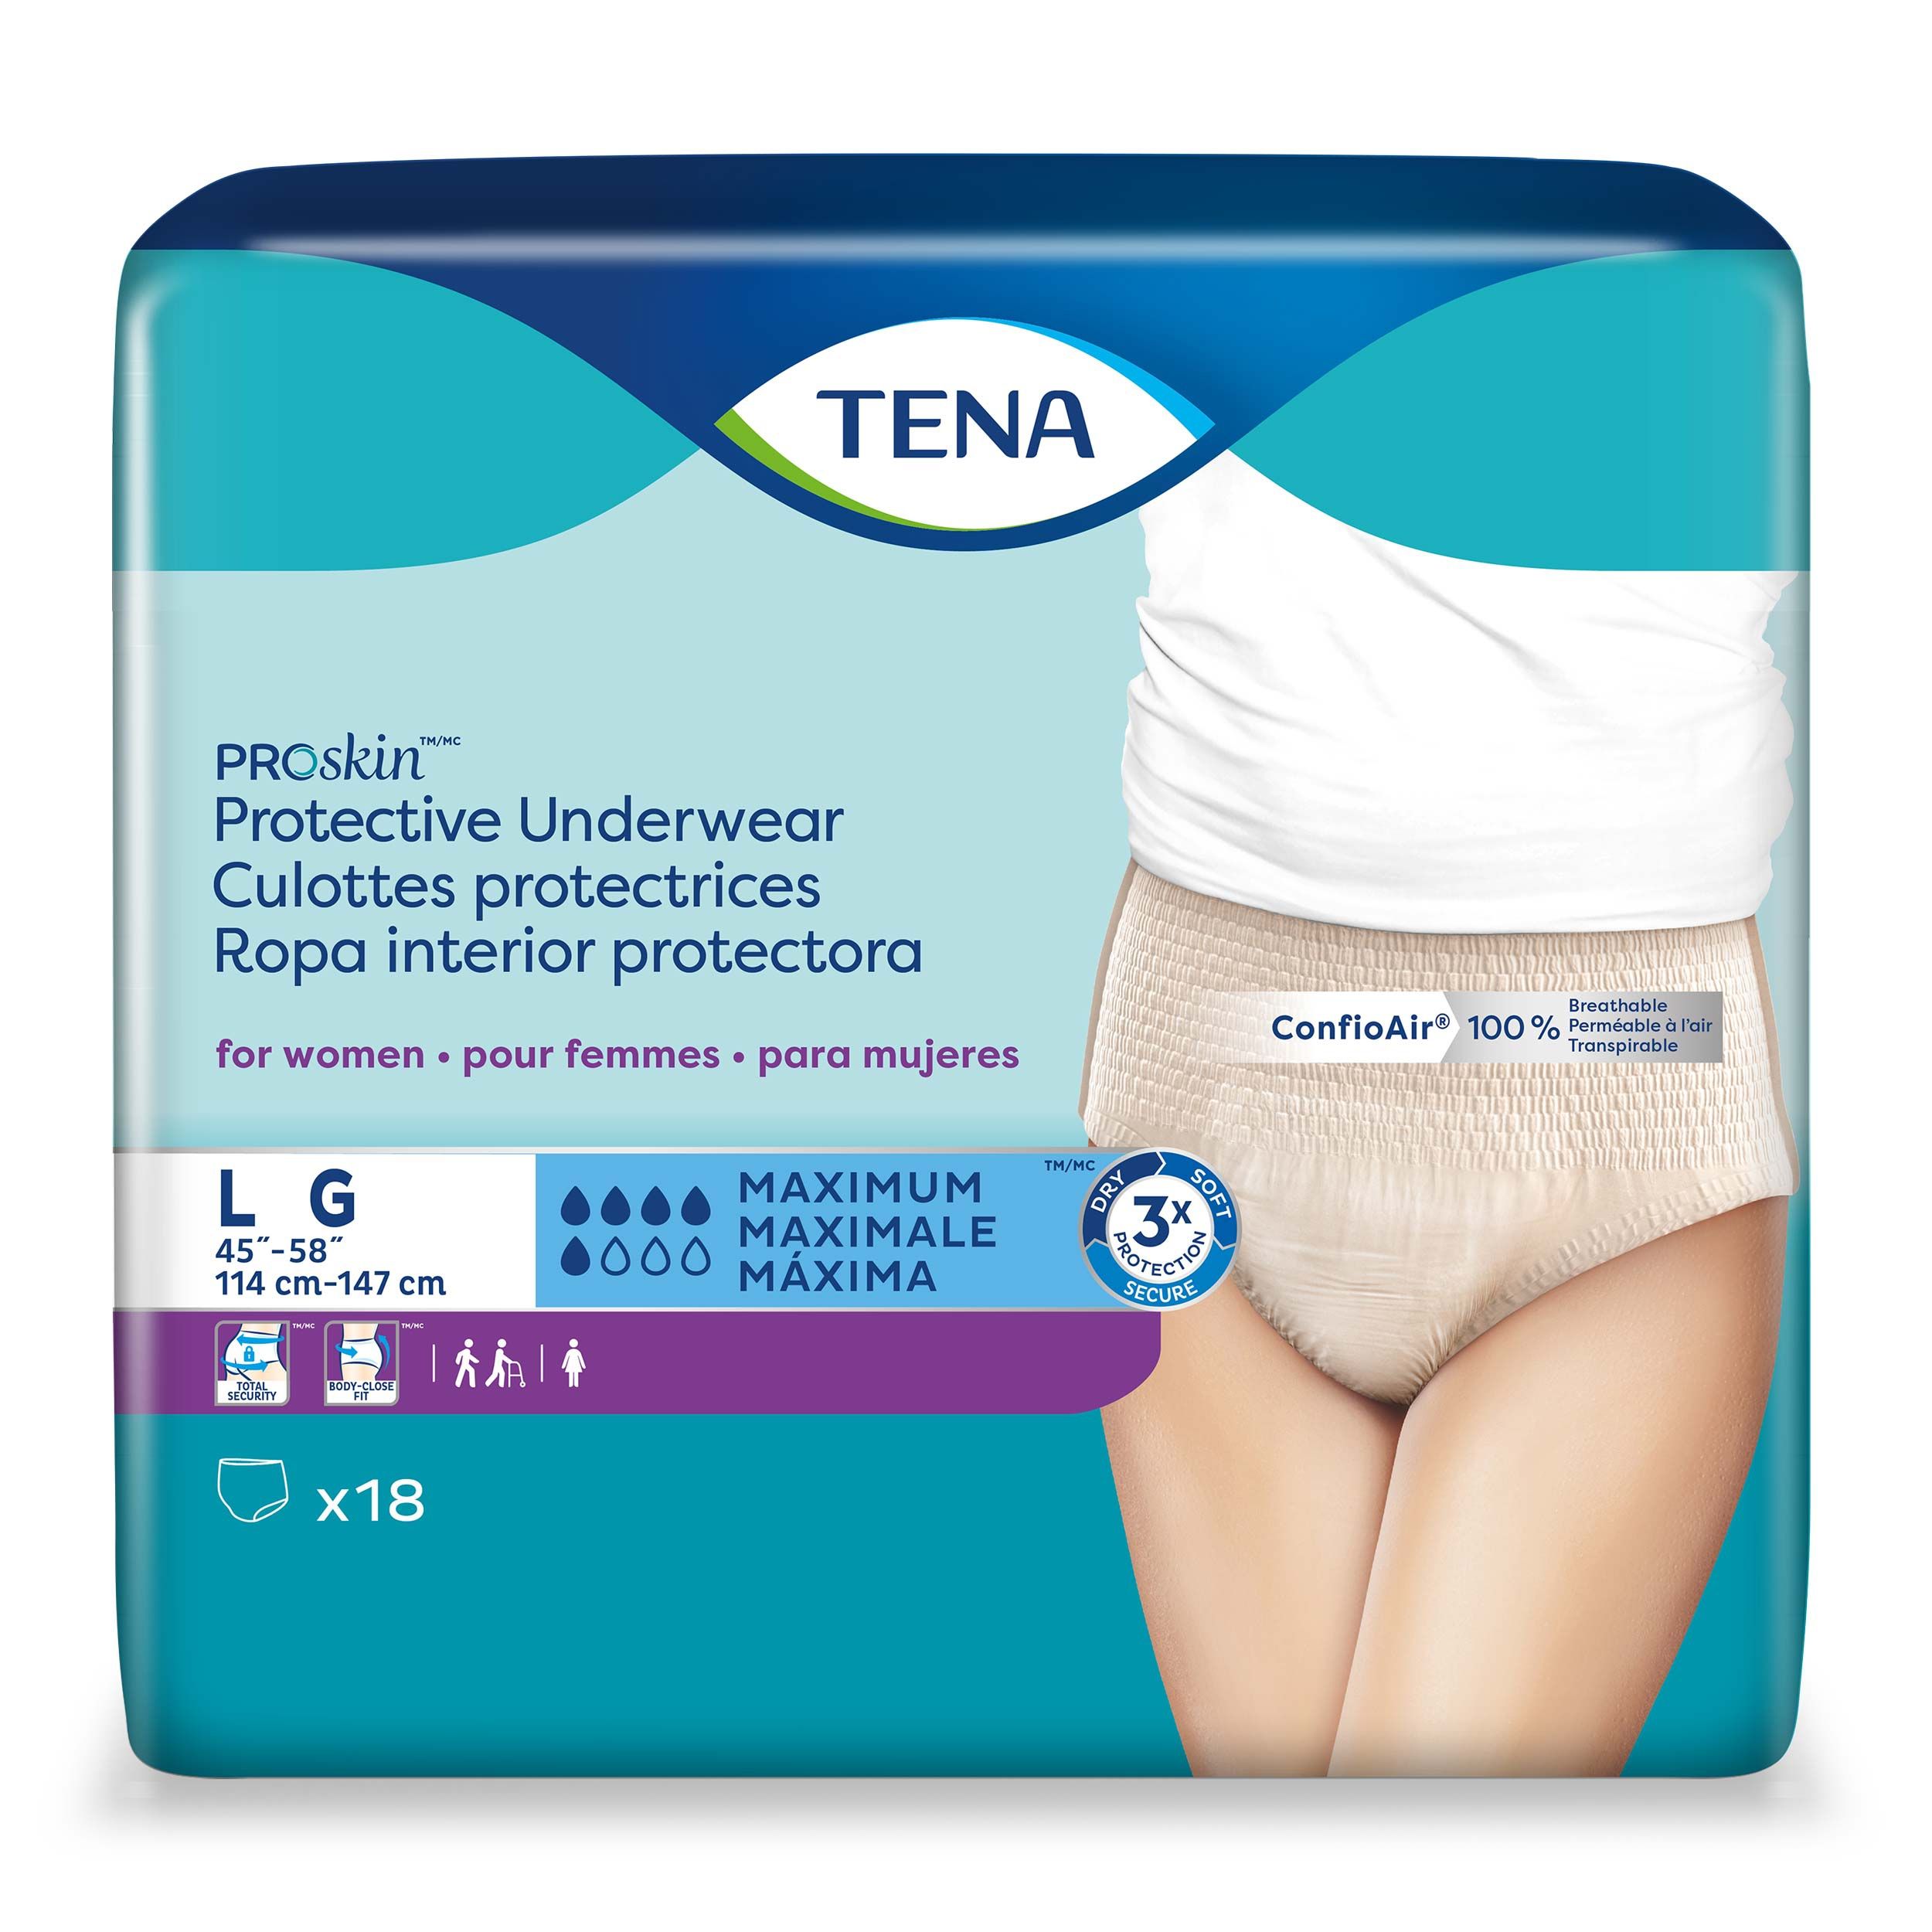 TENA Proskin Maximum Absorbency Underwear for Women - S/M, L, XL